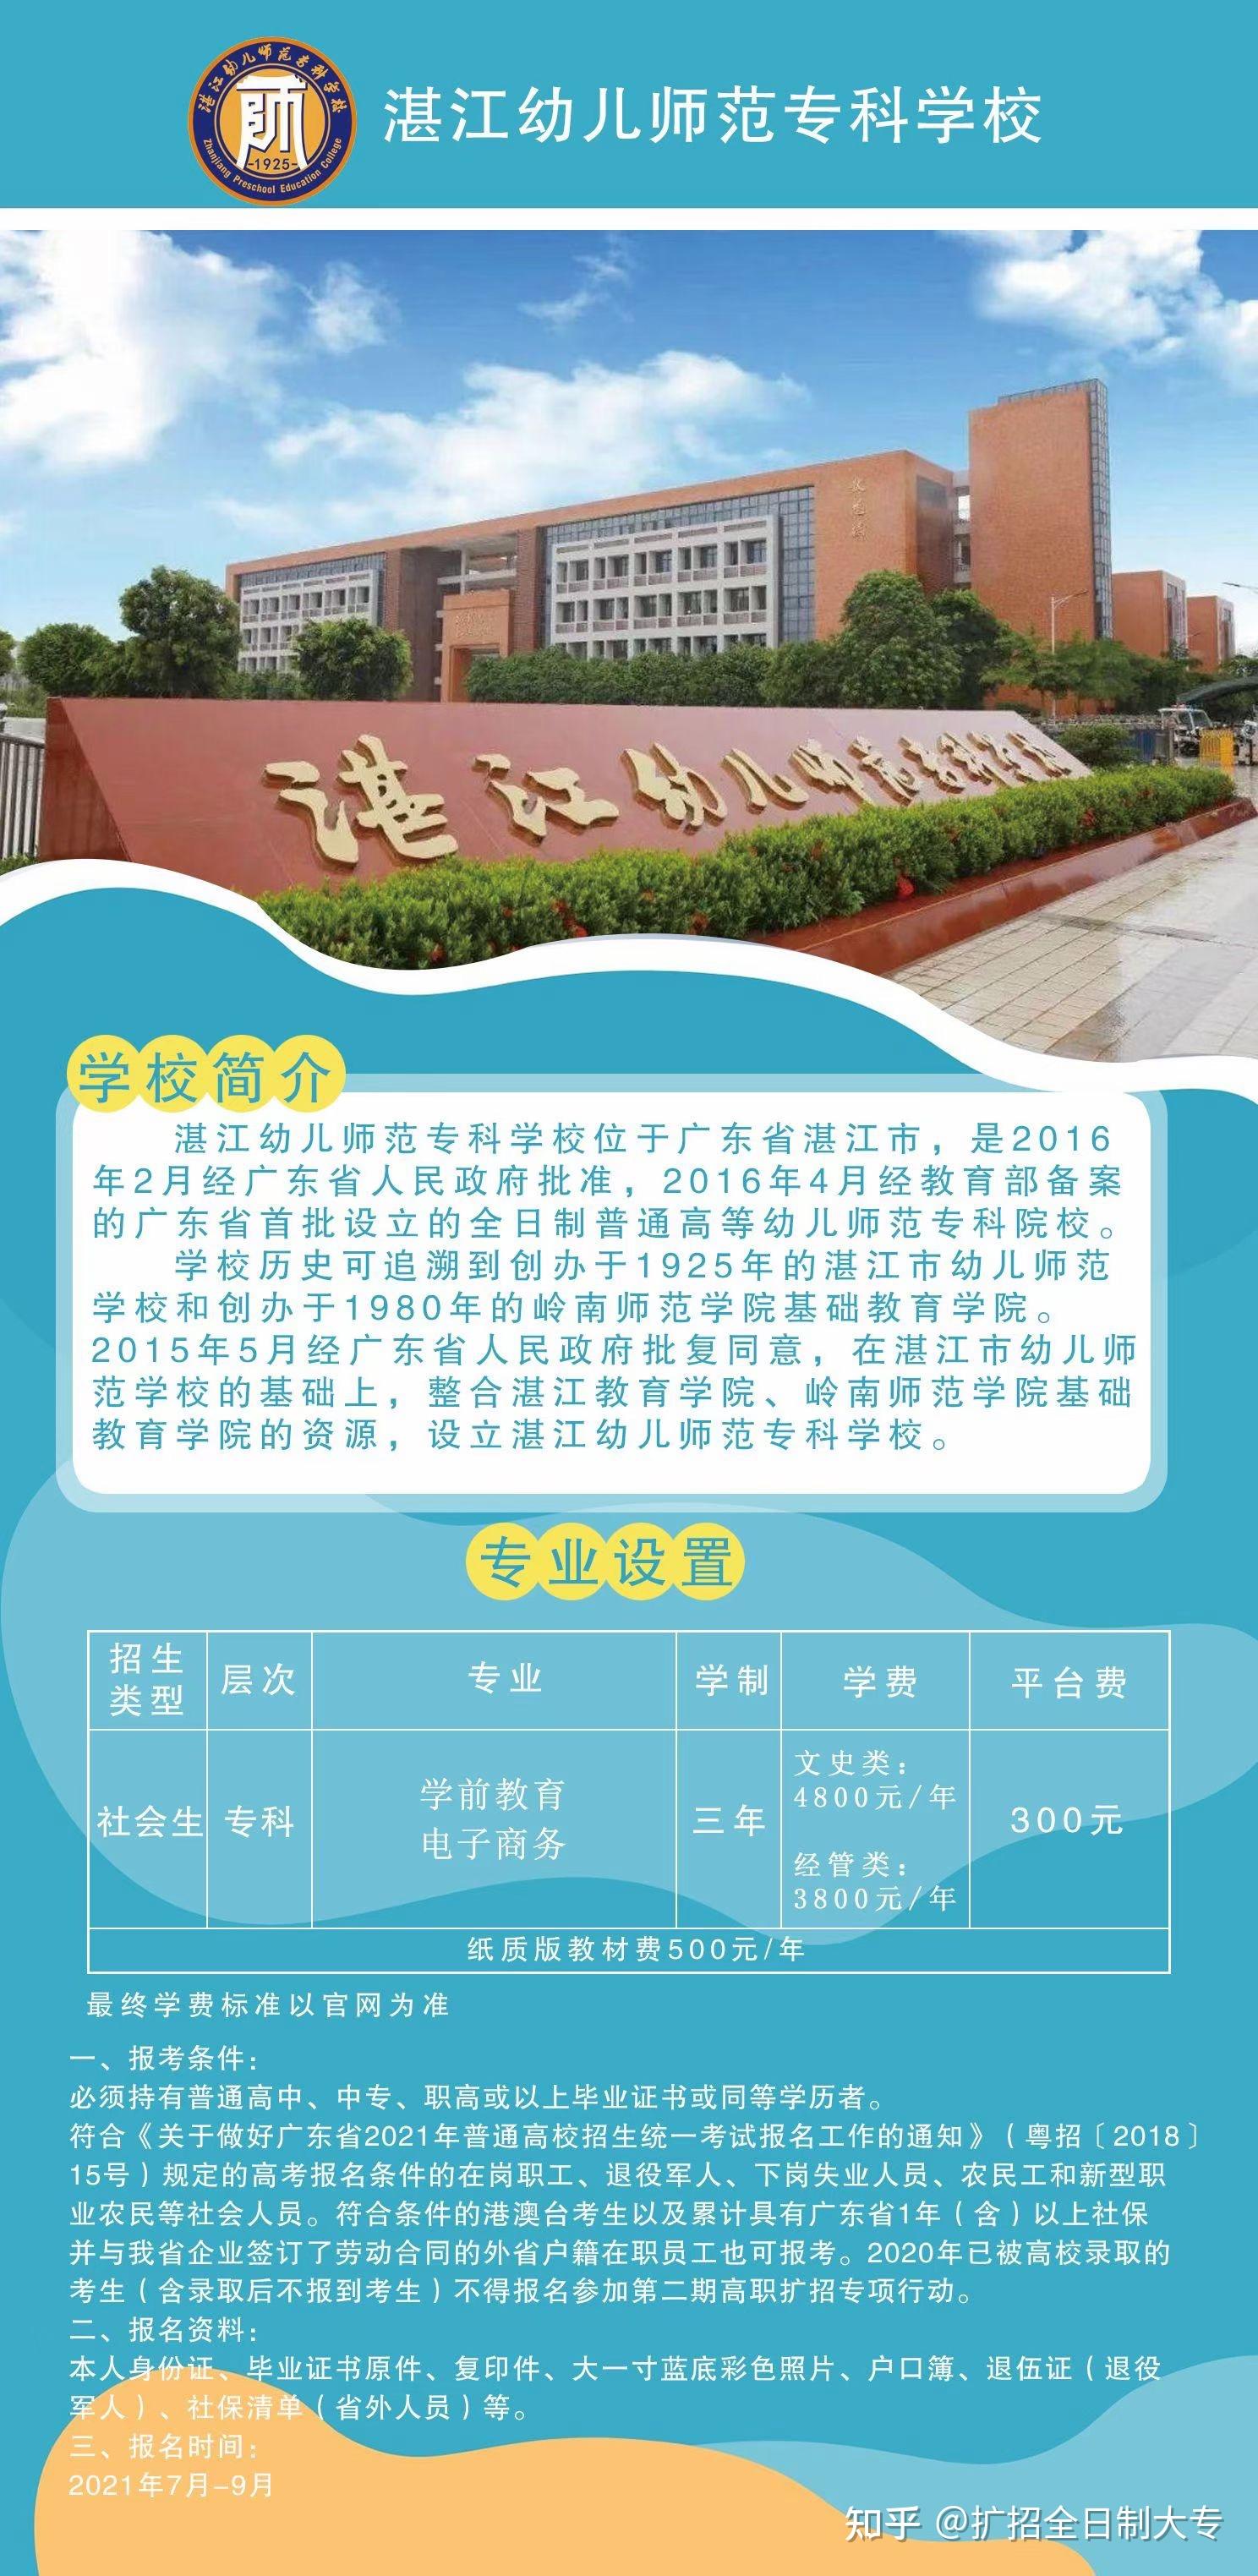 (2)湛江幼儿师范专科学校(湛幼):学前教育专业,是广东省幼儿园园长